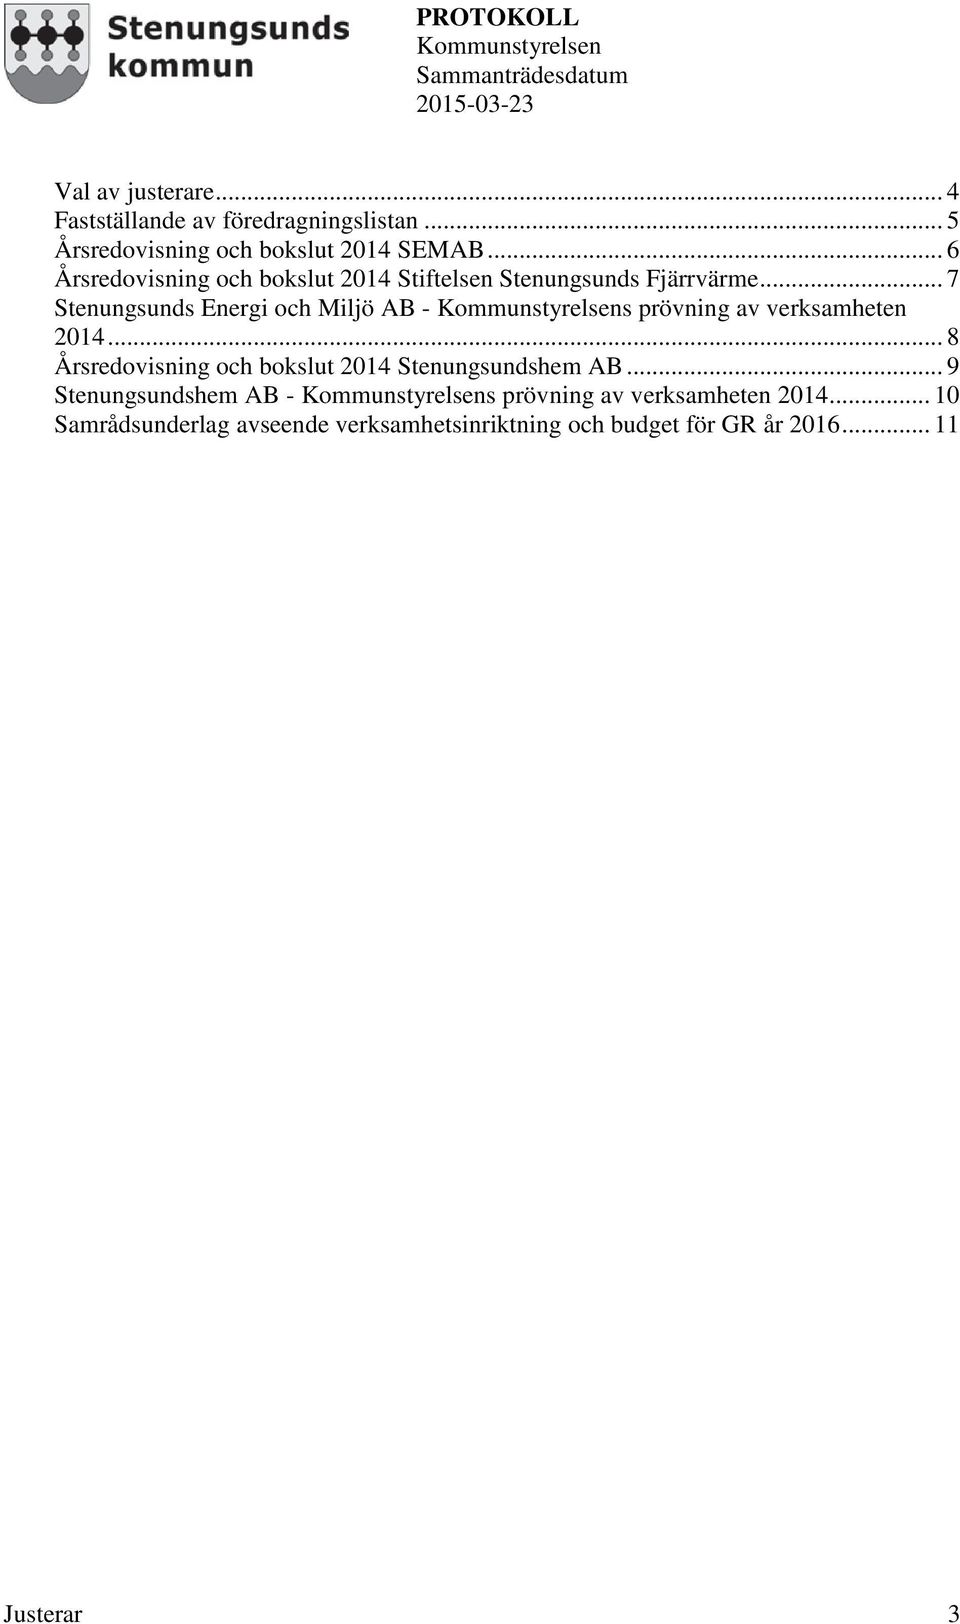 .. 7 Stenungsunds Energi och Miljö AB - s prövning av verksamheten 2014.